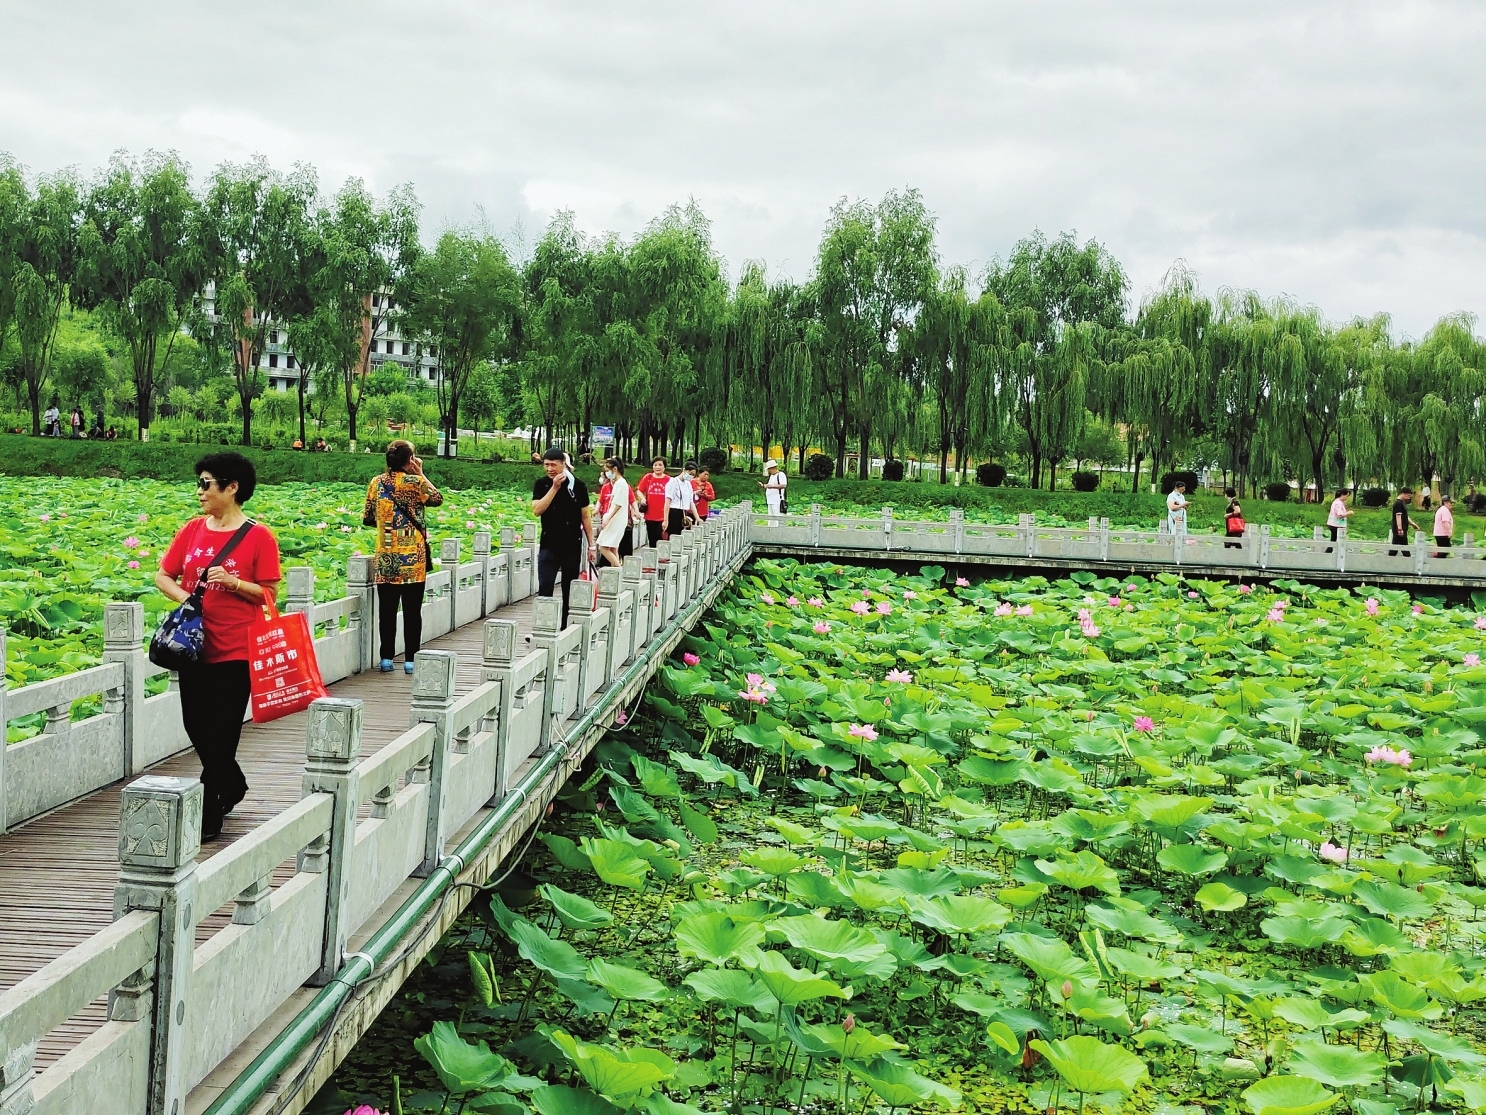 万宝湖儿童公园图片、风景图集网友实景图_旅游图片 | 多文旅游网